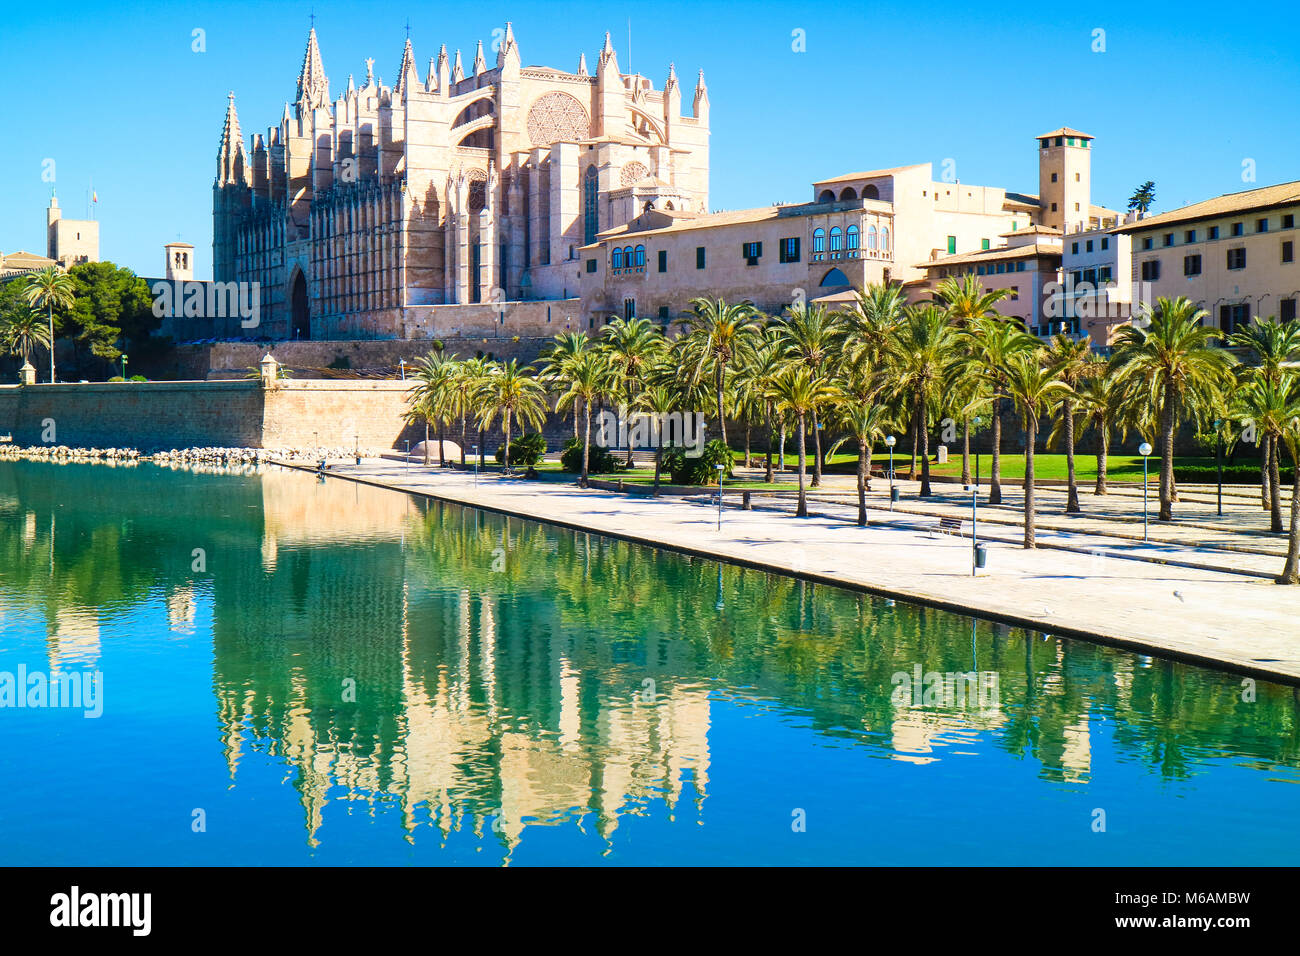 La Seu - la célèbre cathédrale catholique de style gothique médiéval. Palma de Mallorca, Espagne. La réflexion de l'eau. Banque D'Images